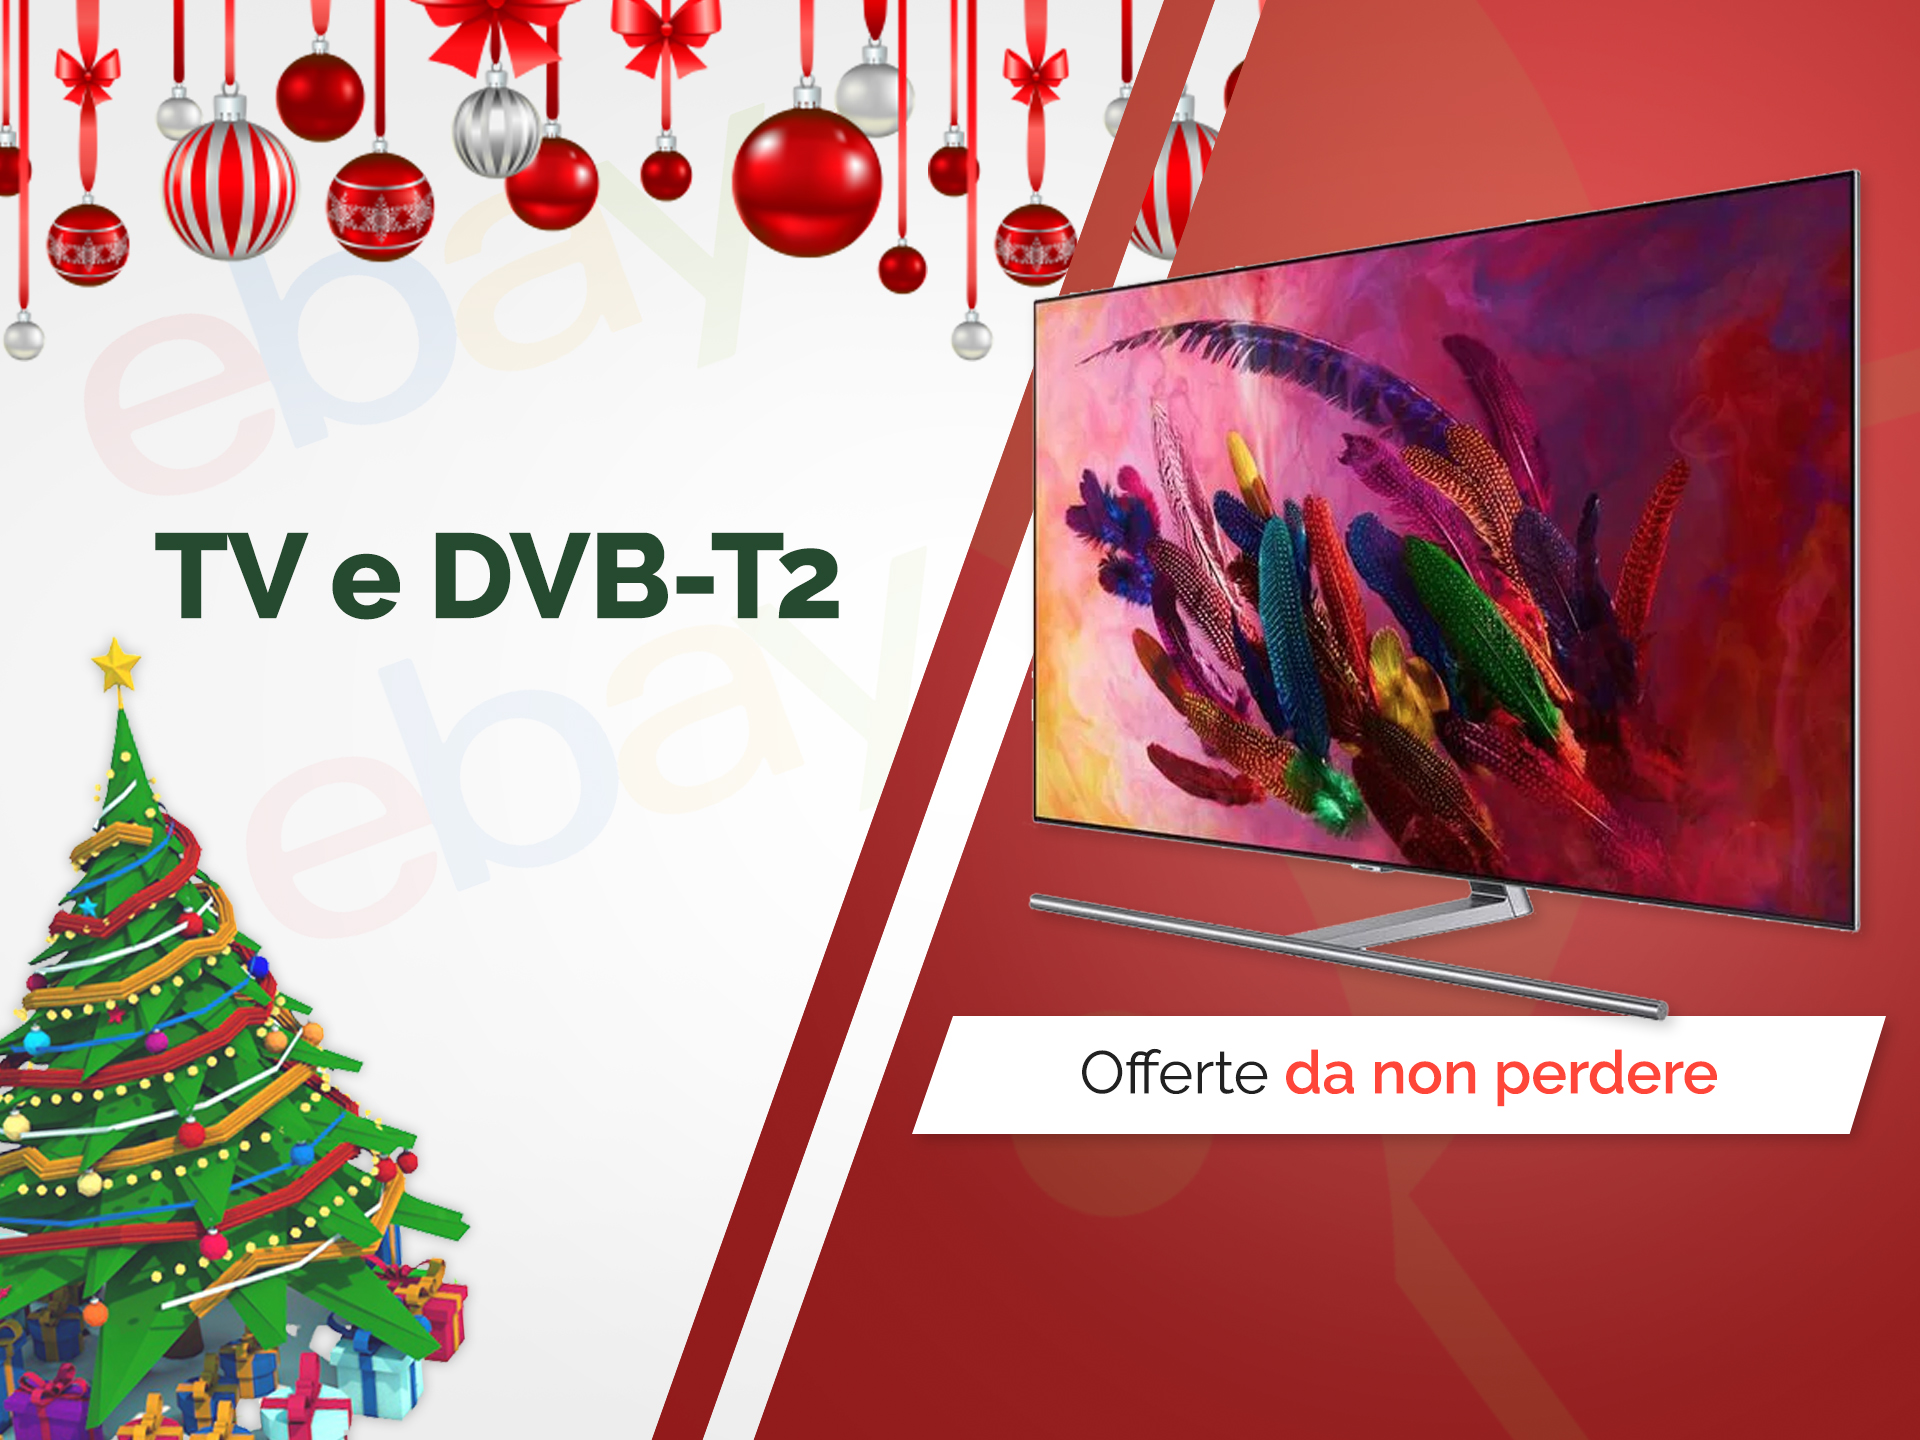 Regali Di Natale Su Ebay.Le Migliori Offerte Tv Dvb T2 E Decoder Di Dicembre 2019